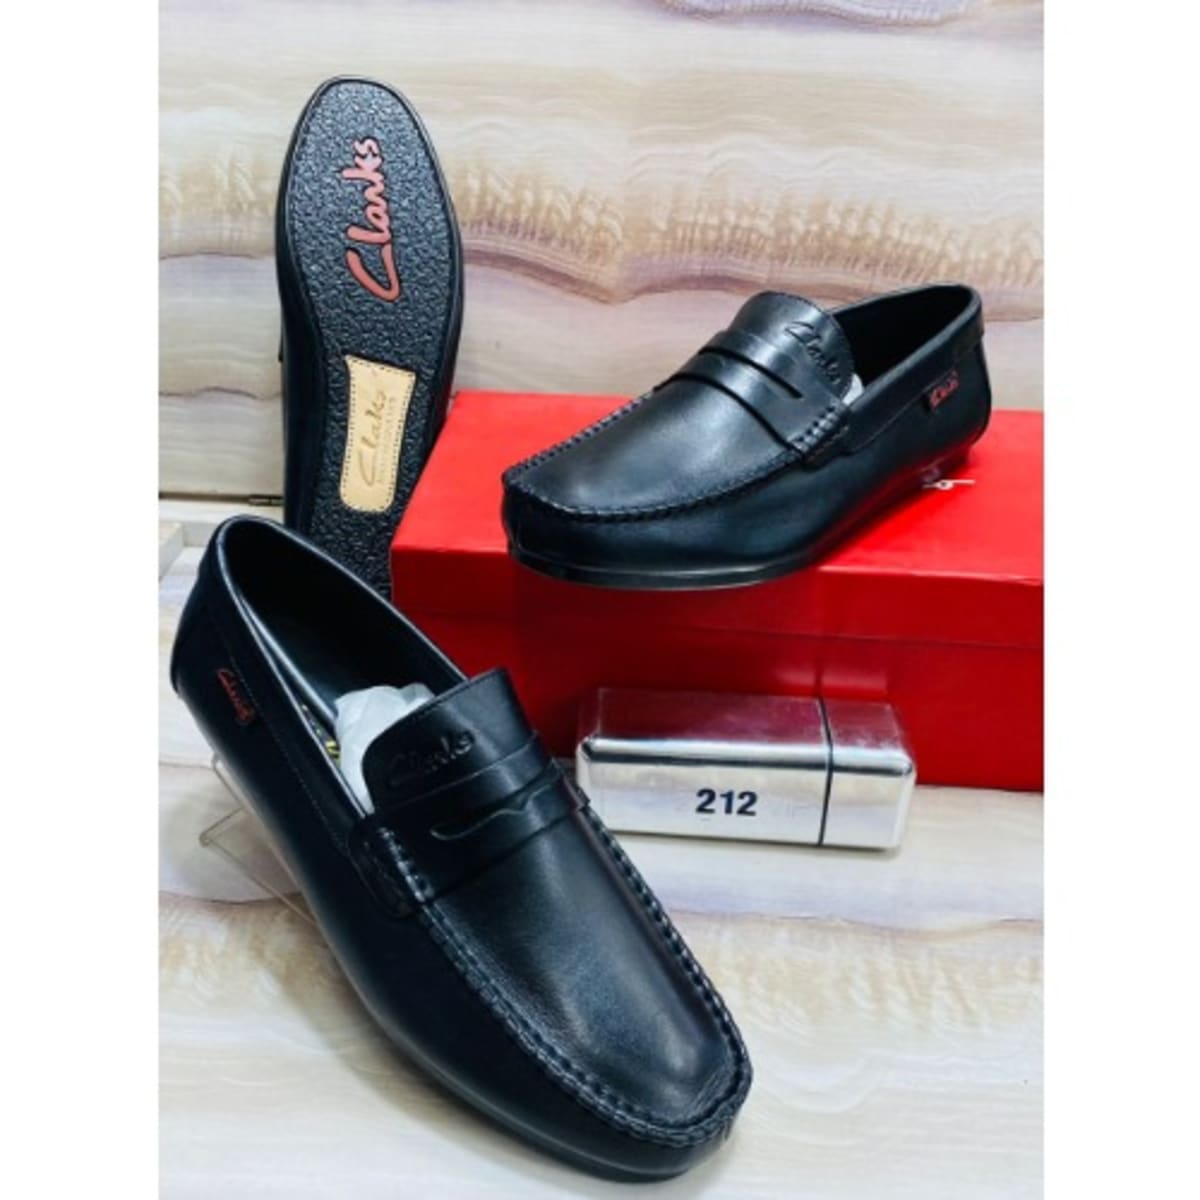 Implementar Acerca de la configuración En honor Clarks Loafer - Black | Konga Online Shopping